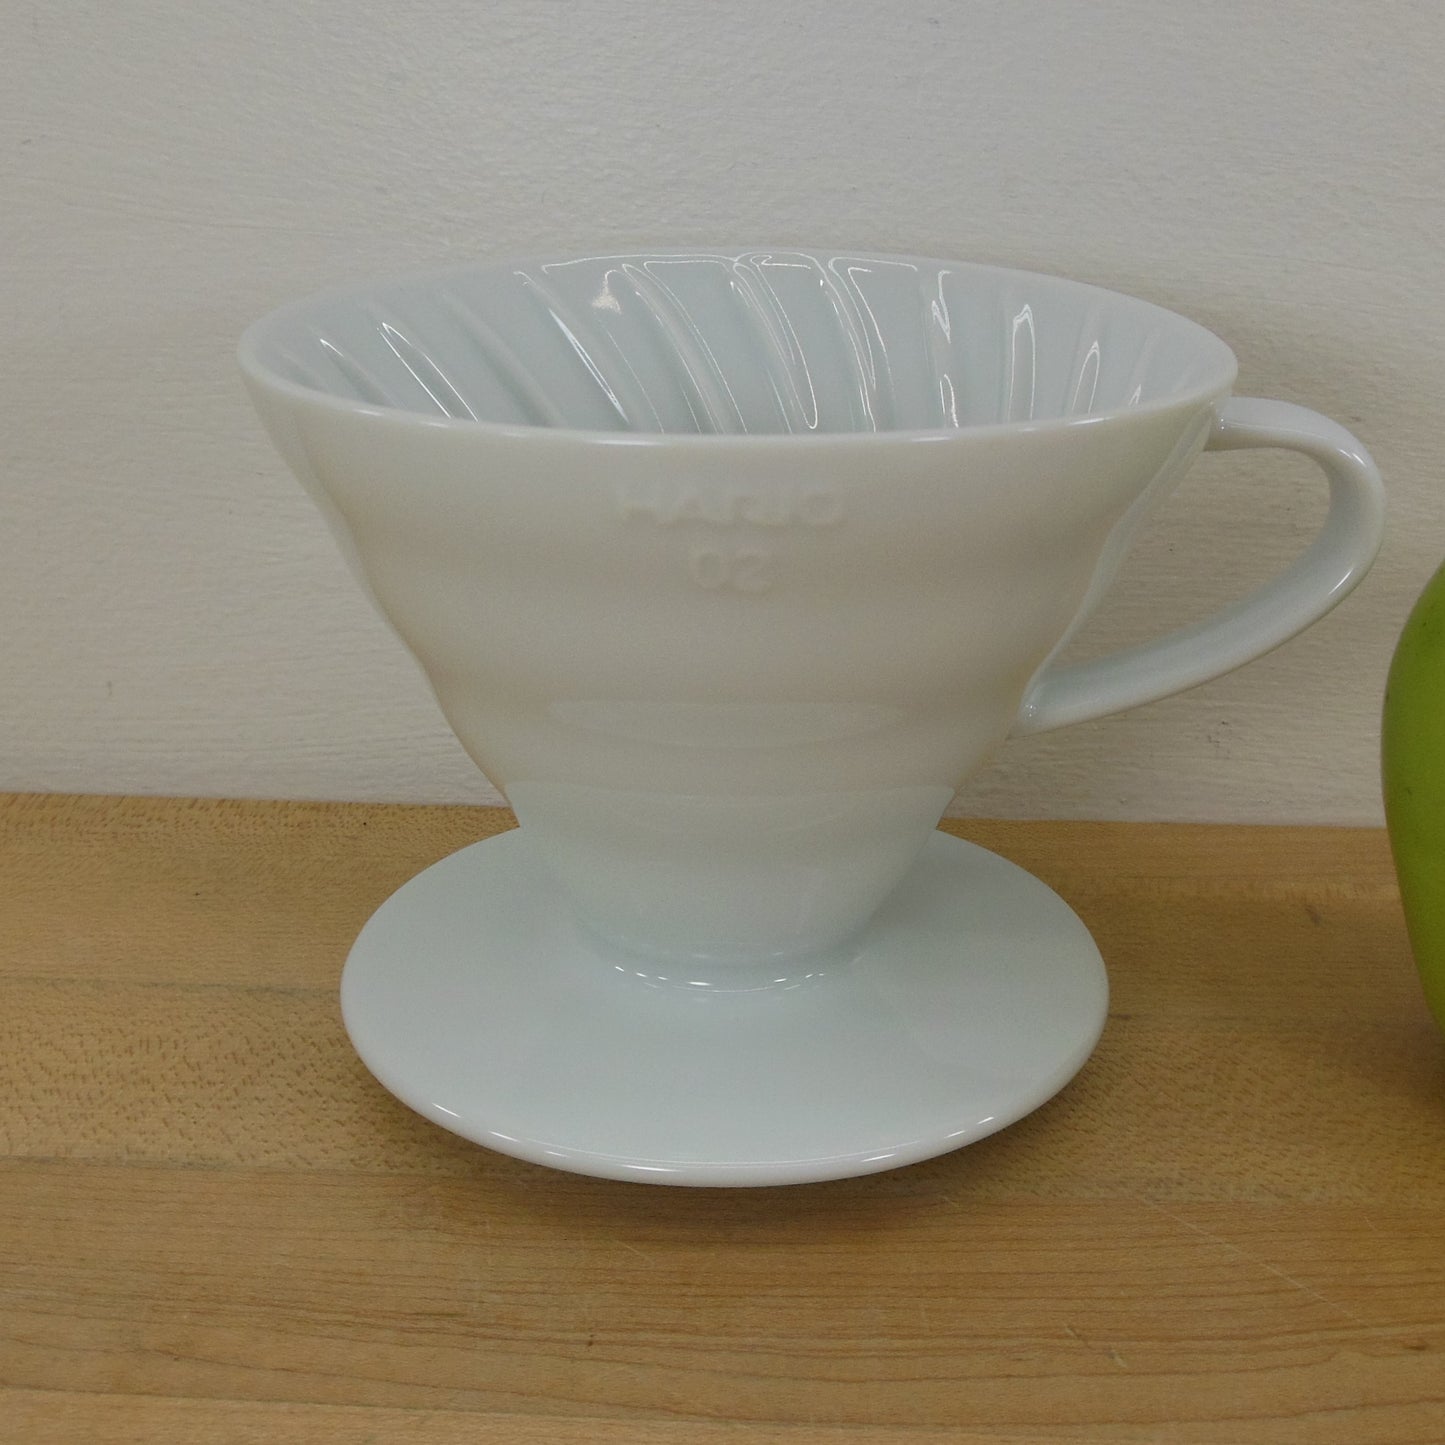 Hario 02 V60 White Ceramic Pour Over Drip Coffee Maker Cone